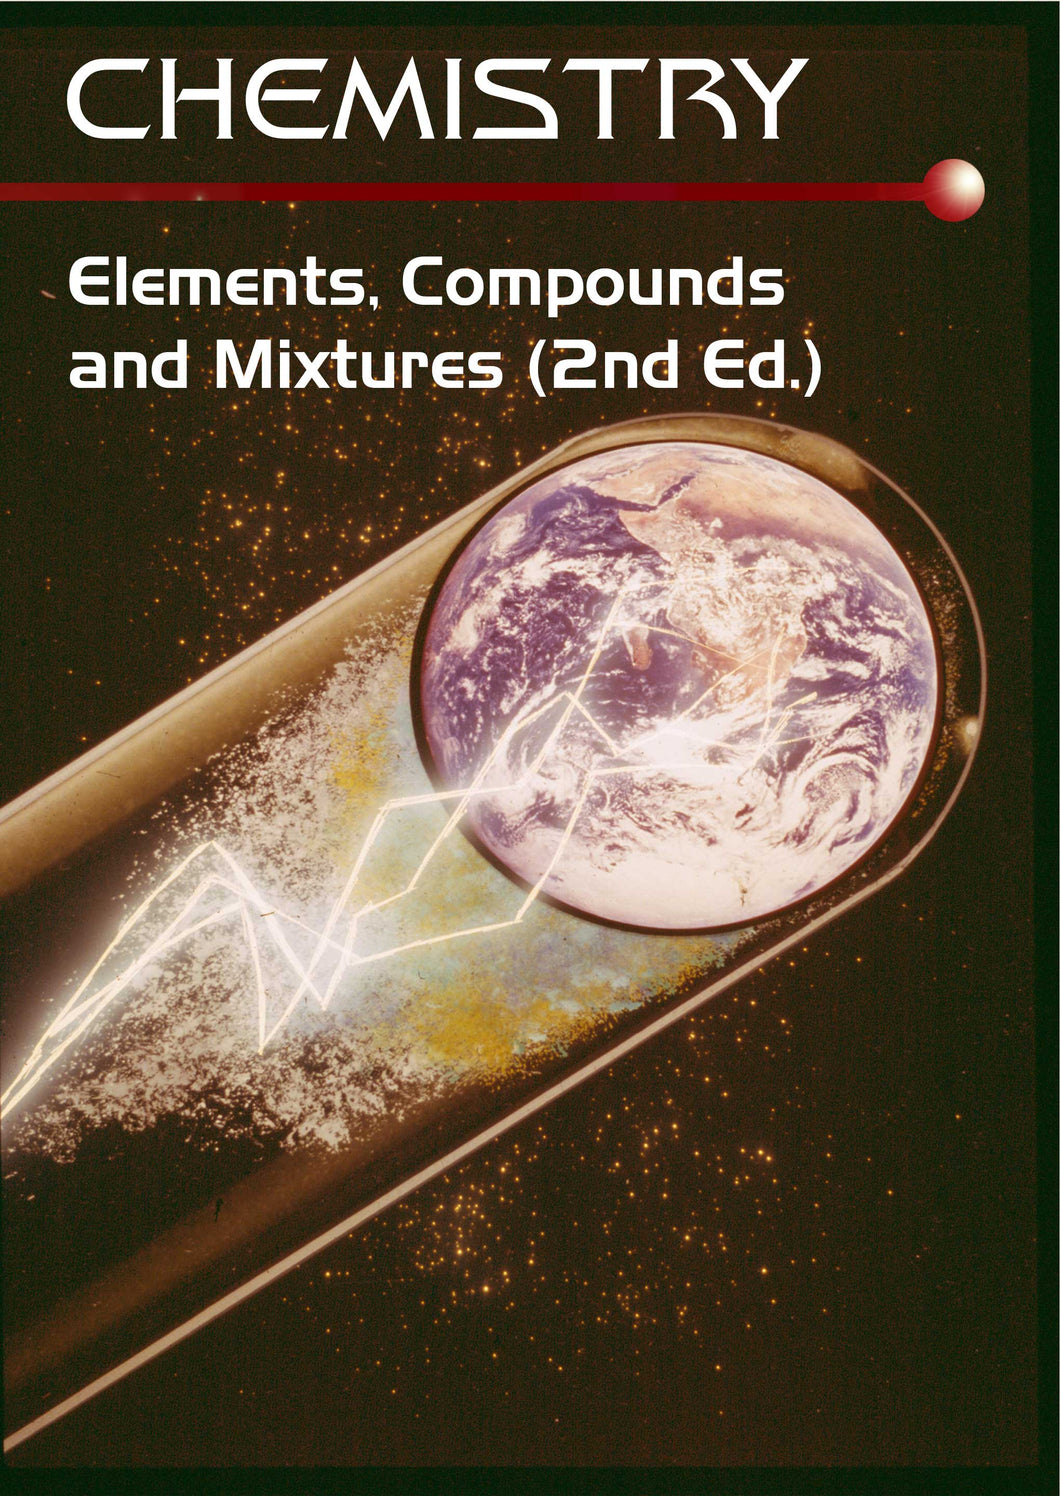 Chemistry Series:  Elements, Compounds & Mixtures